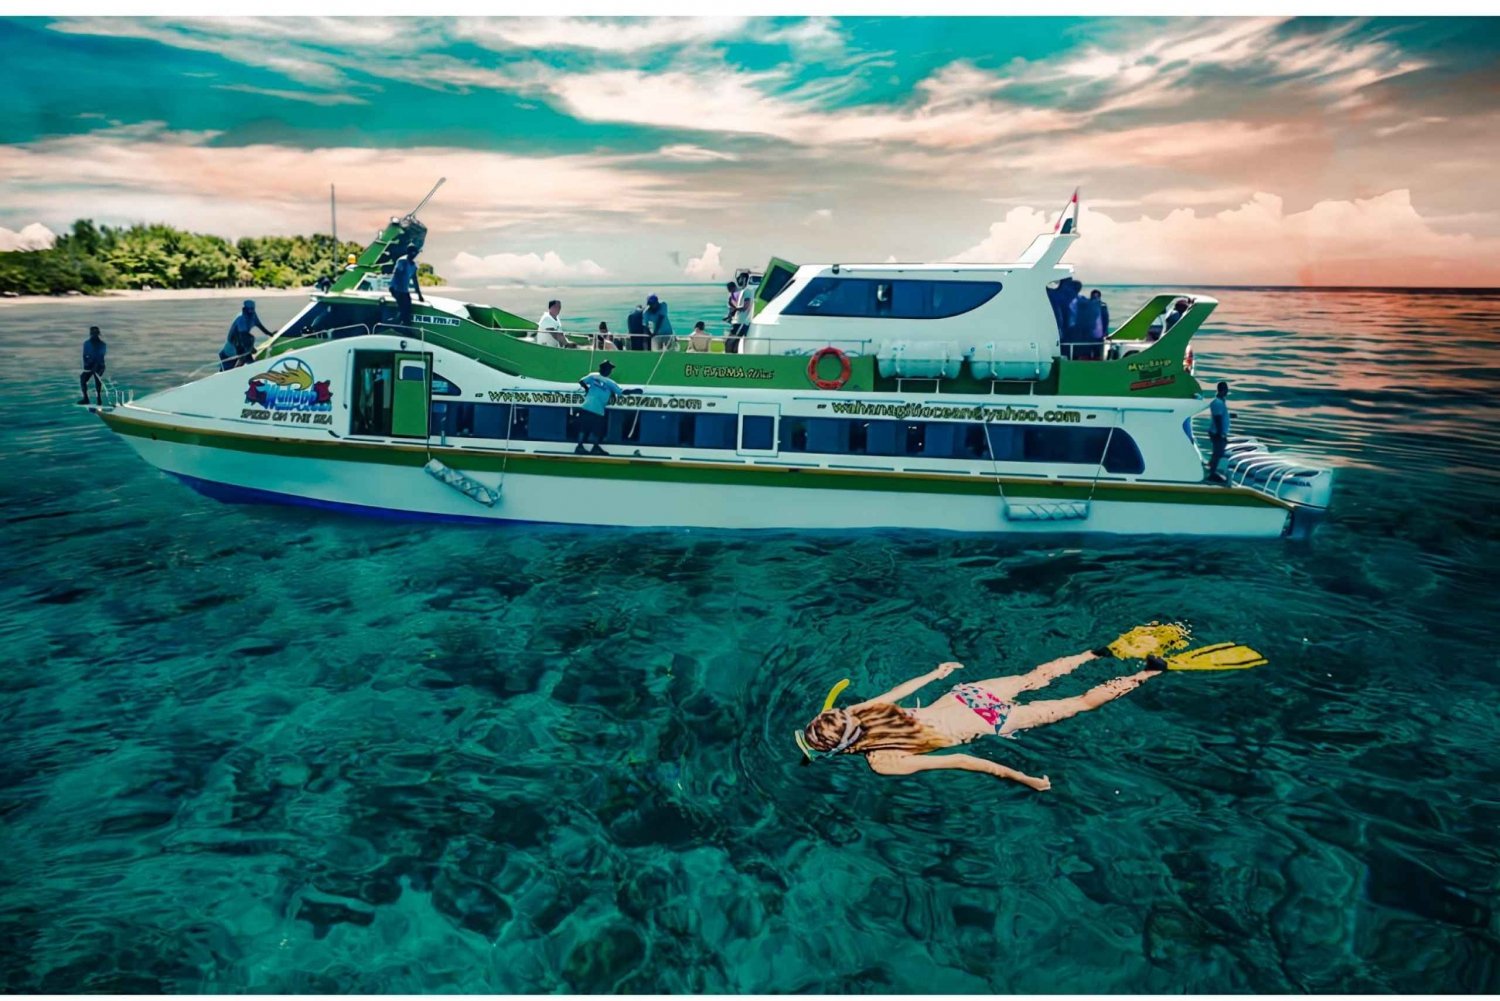 Ingresso Fastboat Bali - Gili Trawangan - Lombok - Bali